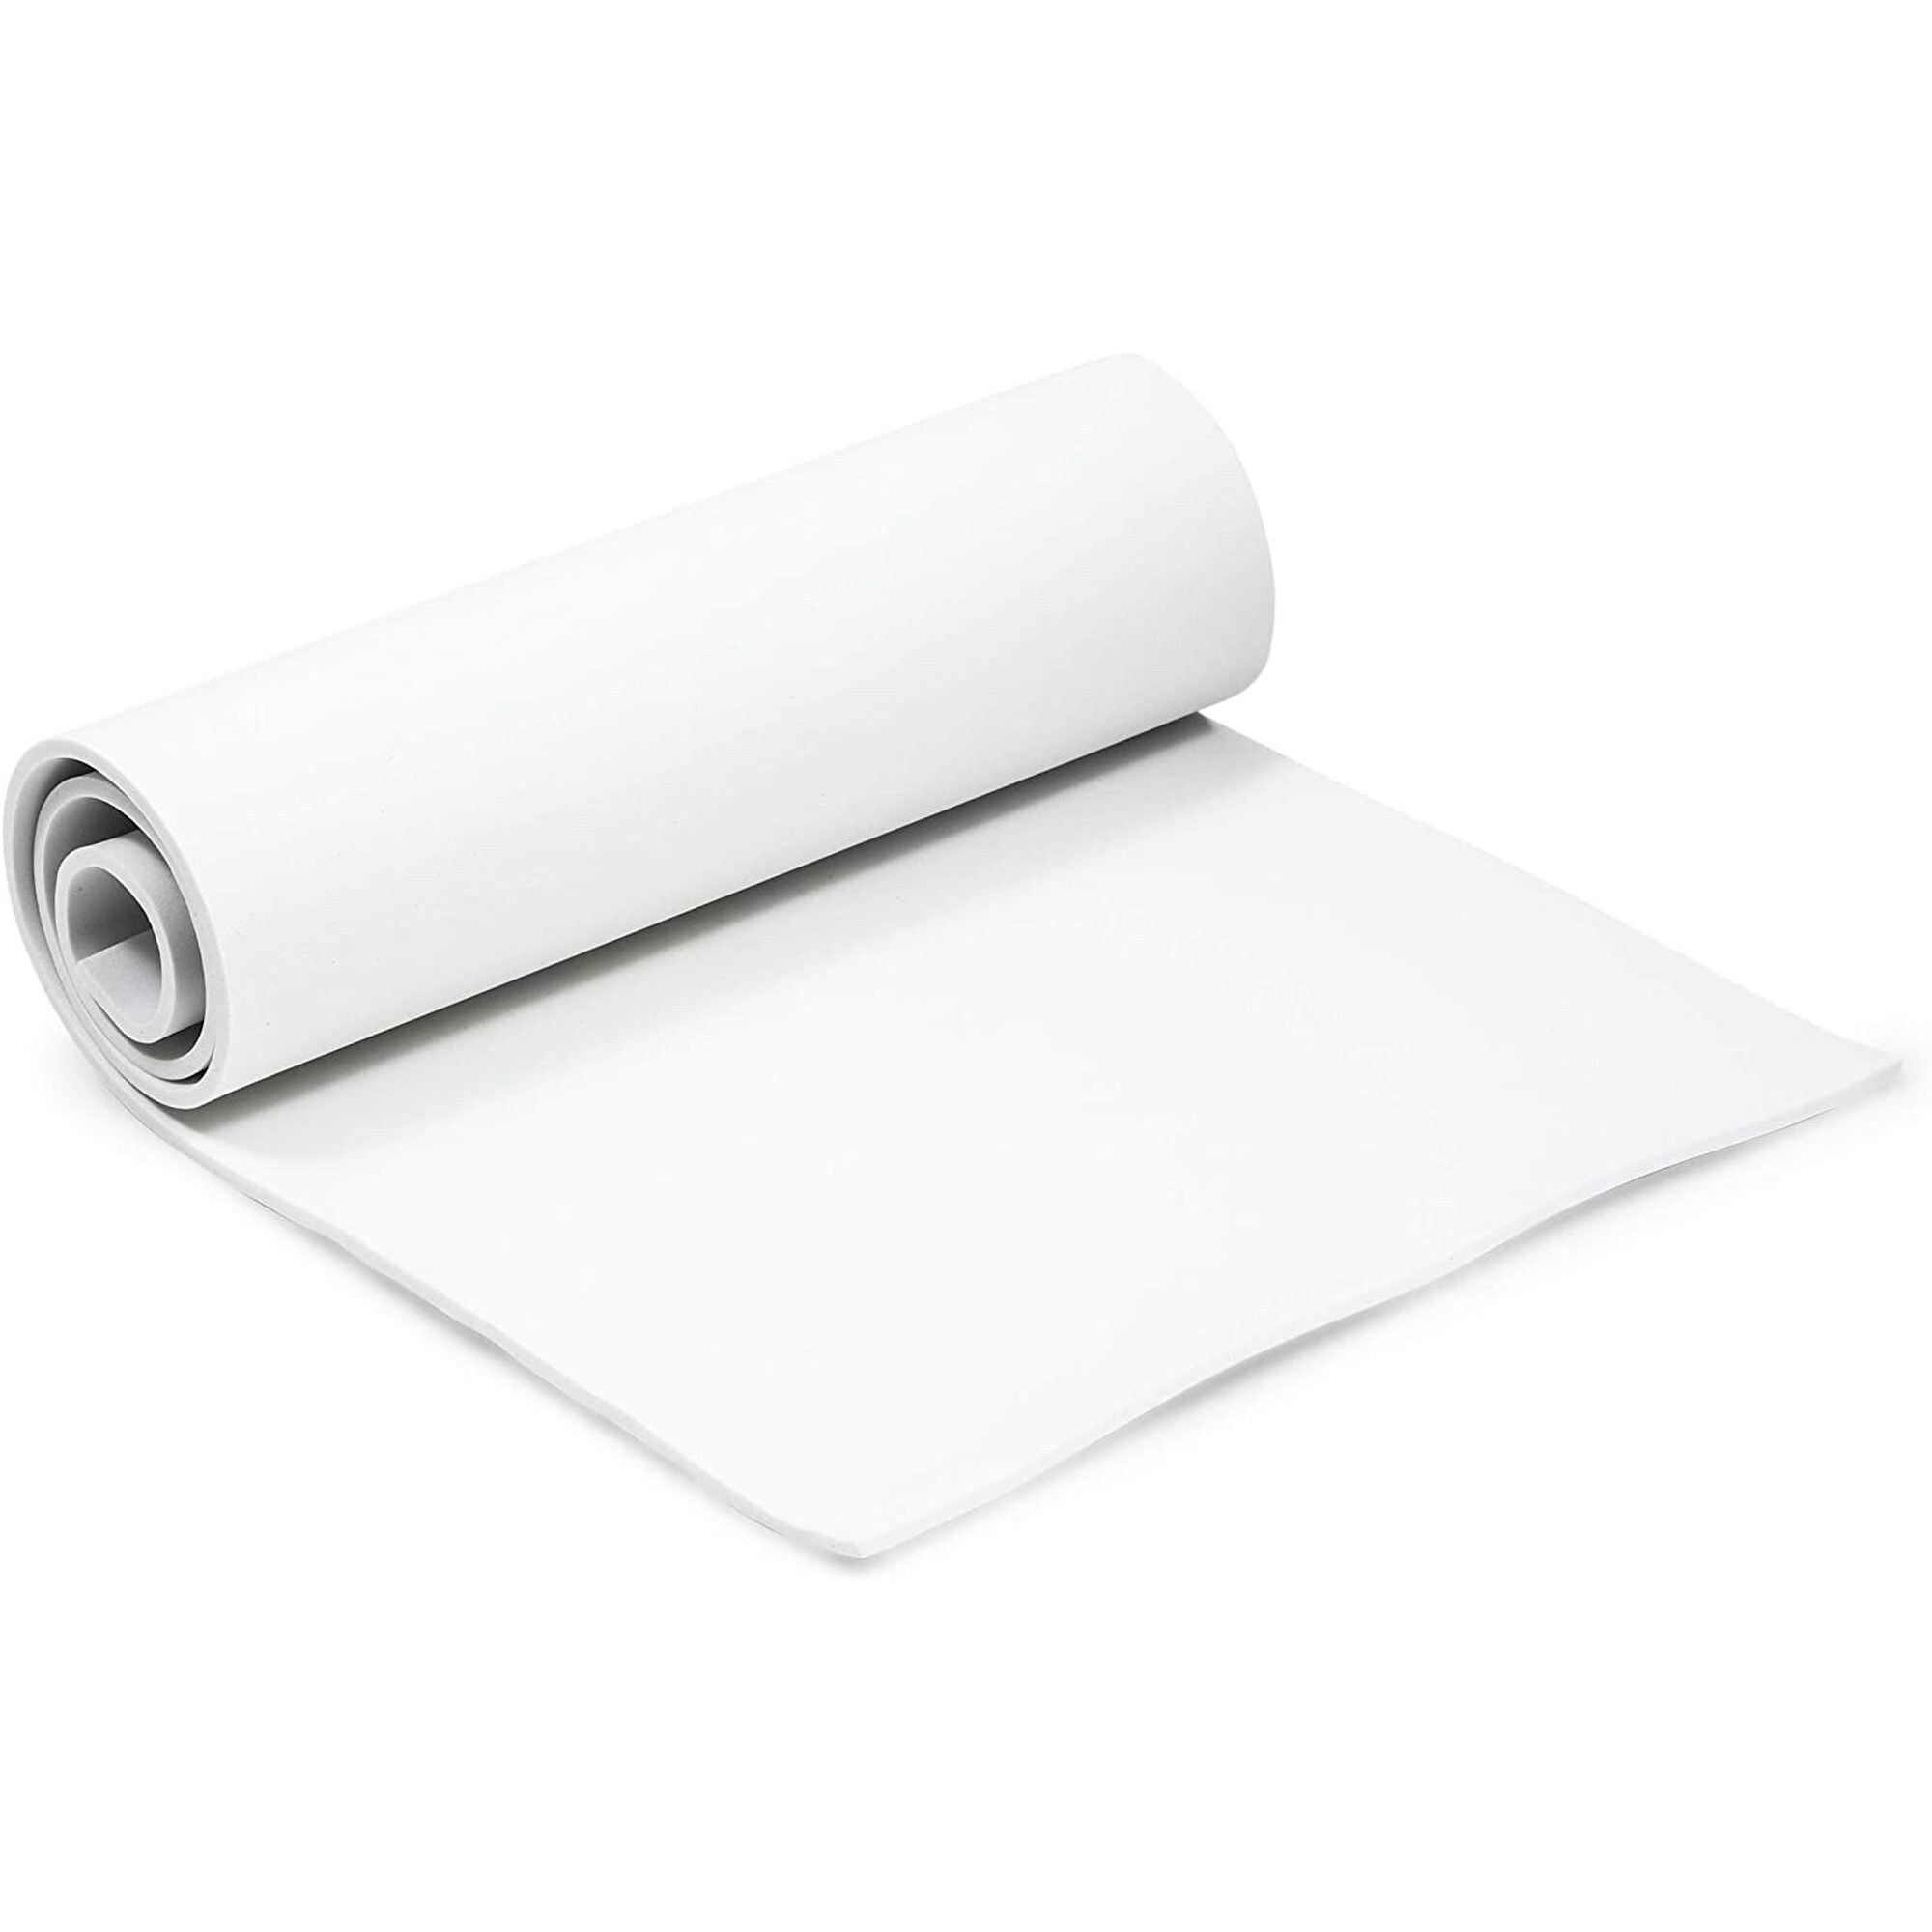 Washable Kraft Liner Paper For Trademark / White Kraft Paper Roll